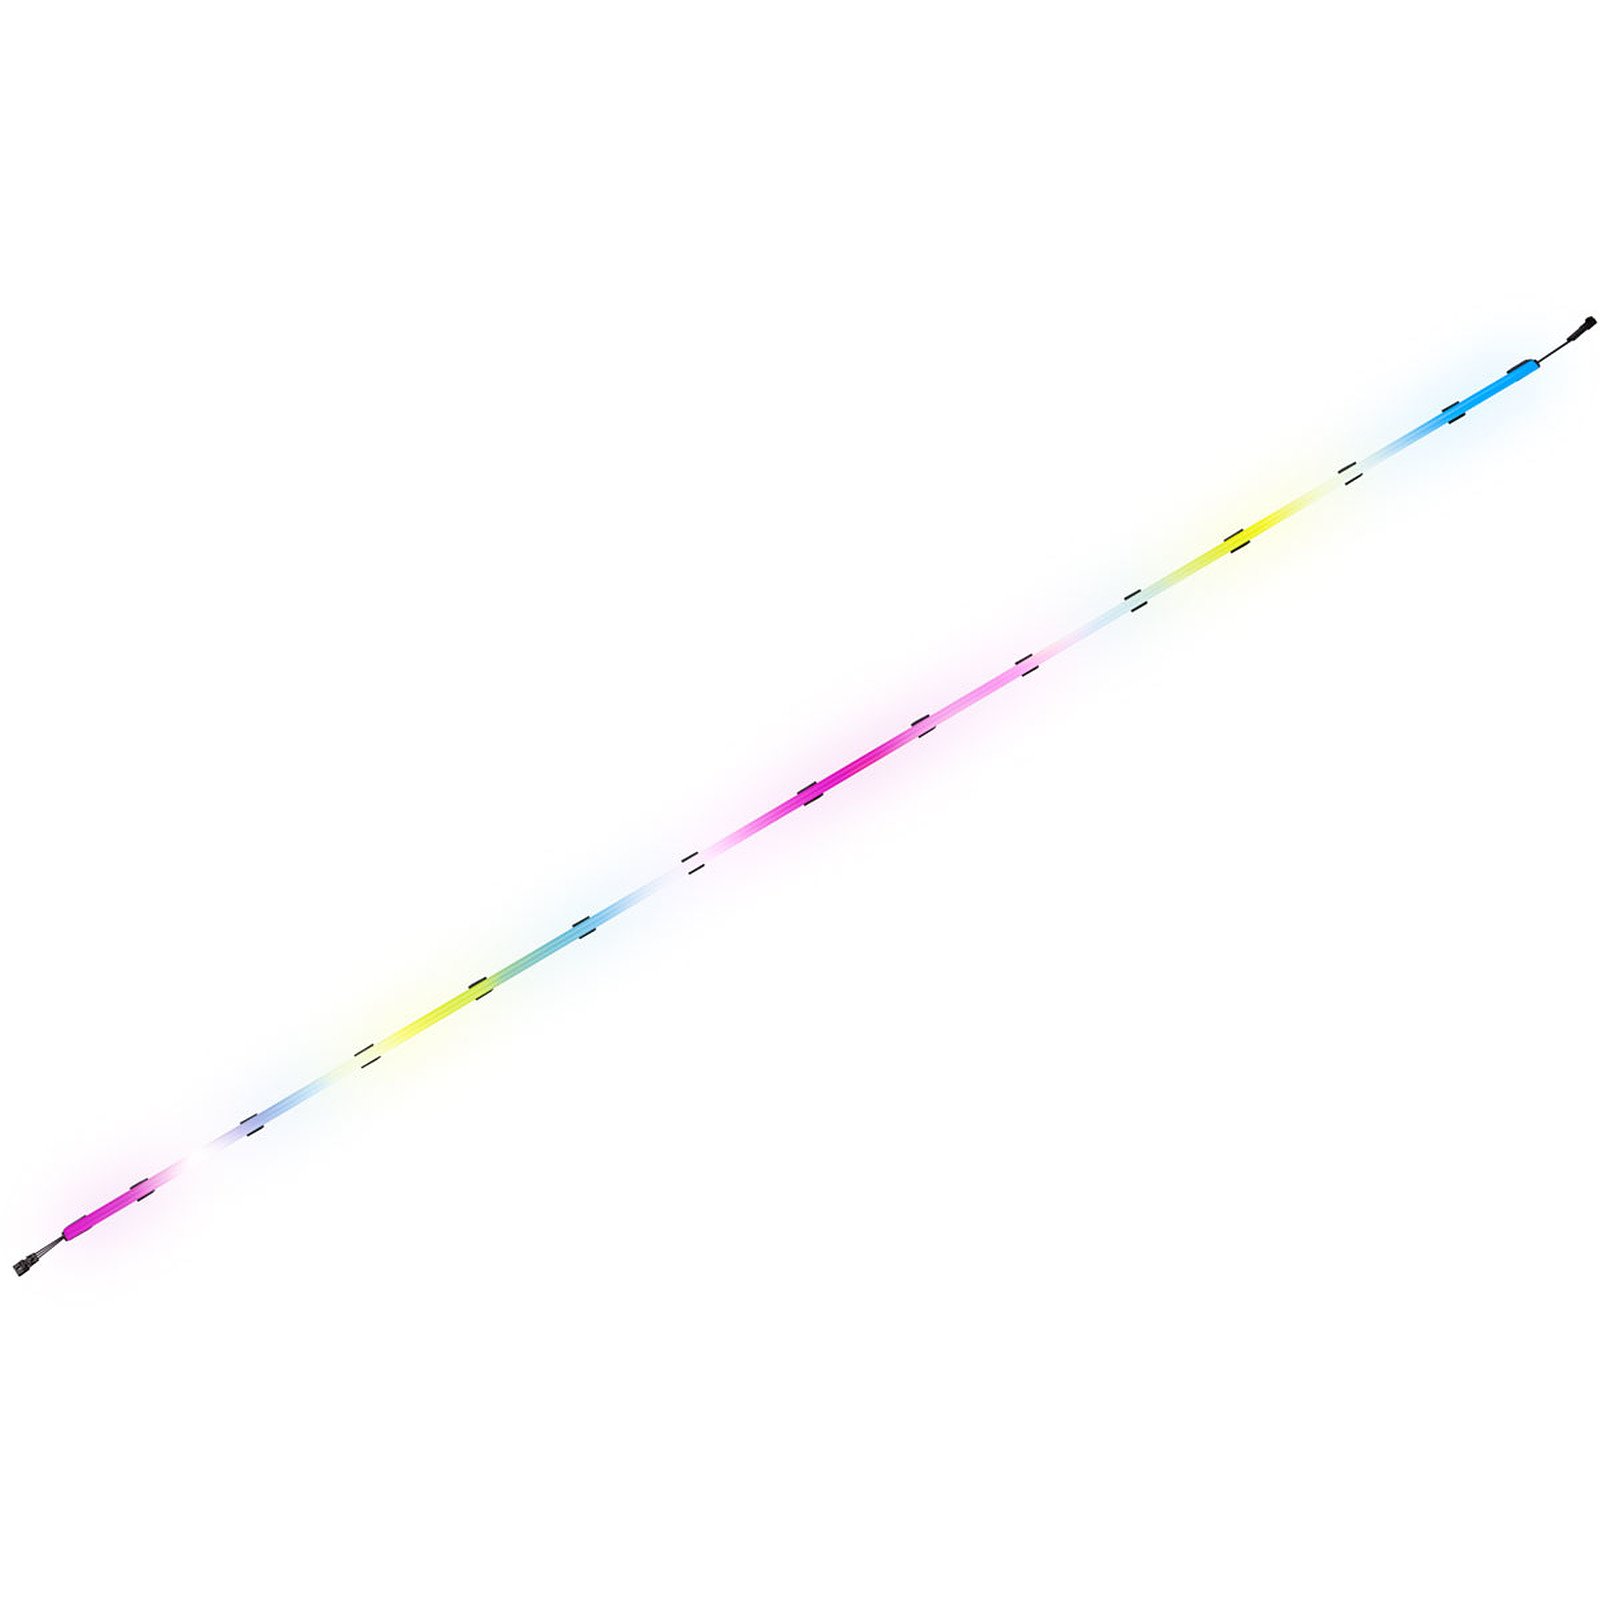 Corsair Lot d'extension iCUE LS100 Smart Lighting Strip 140 cm · Occasion - Neon PC Corsair - Occasion